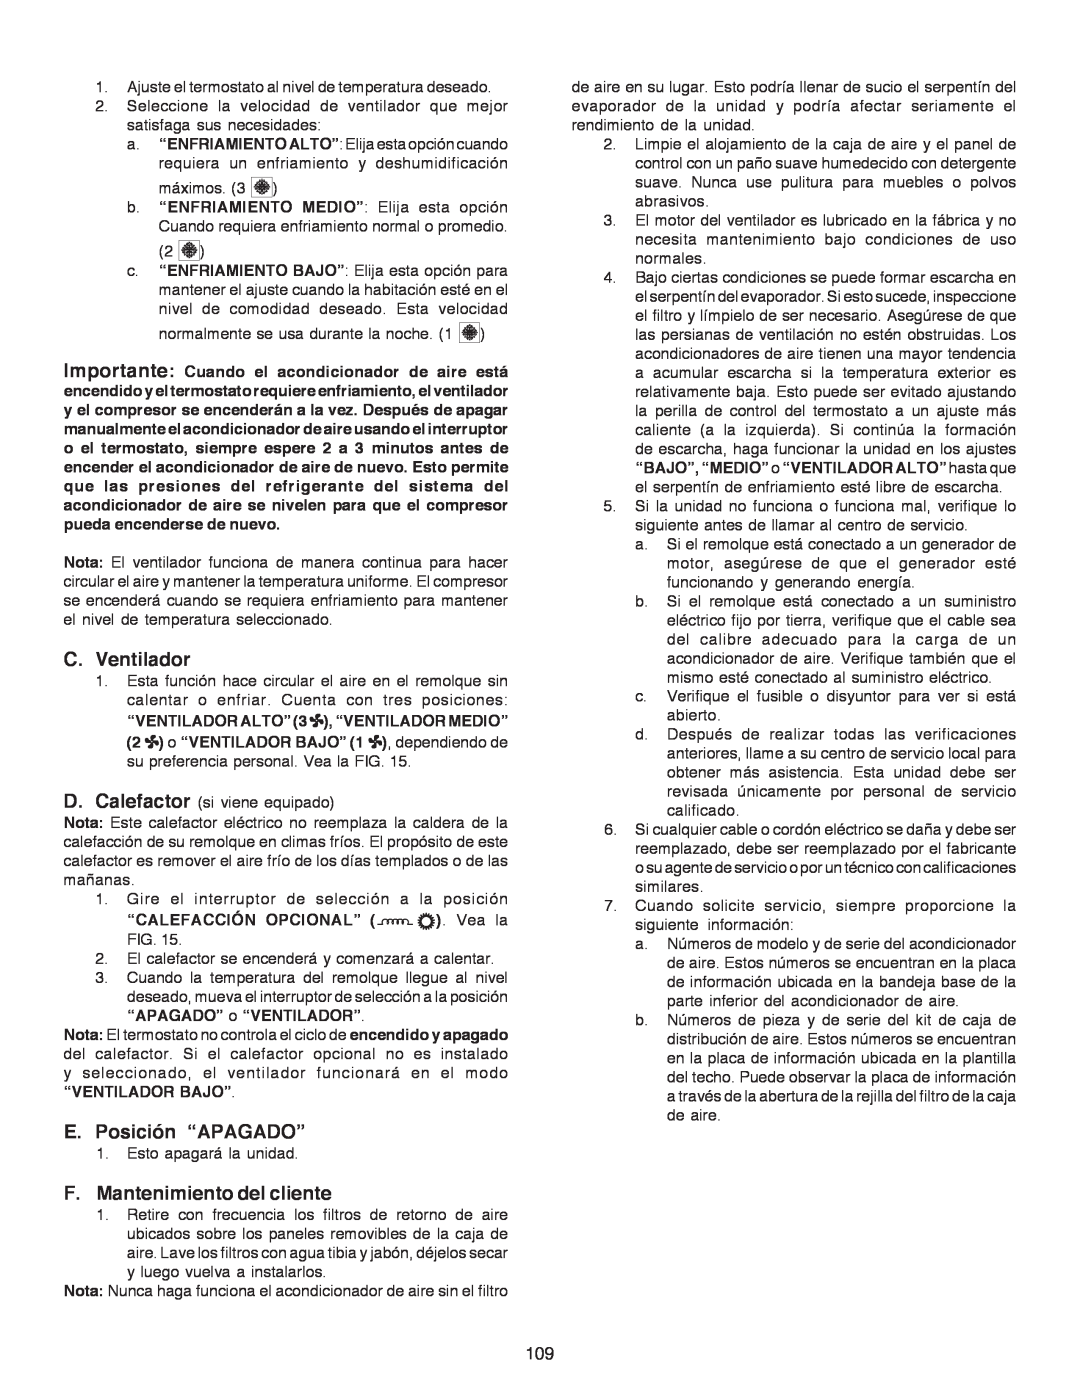 Dometic B3200 manual C.Ventilador, E. Posición “APAGADO”, F.Mantenimiento del cliente 